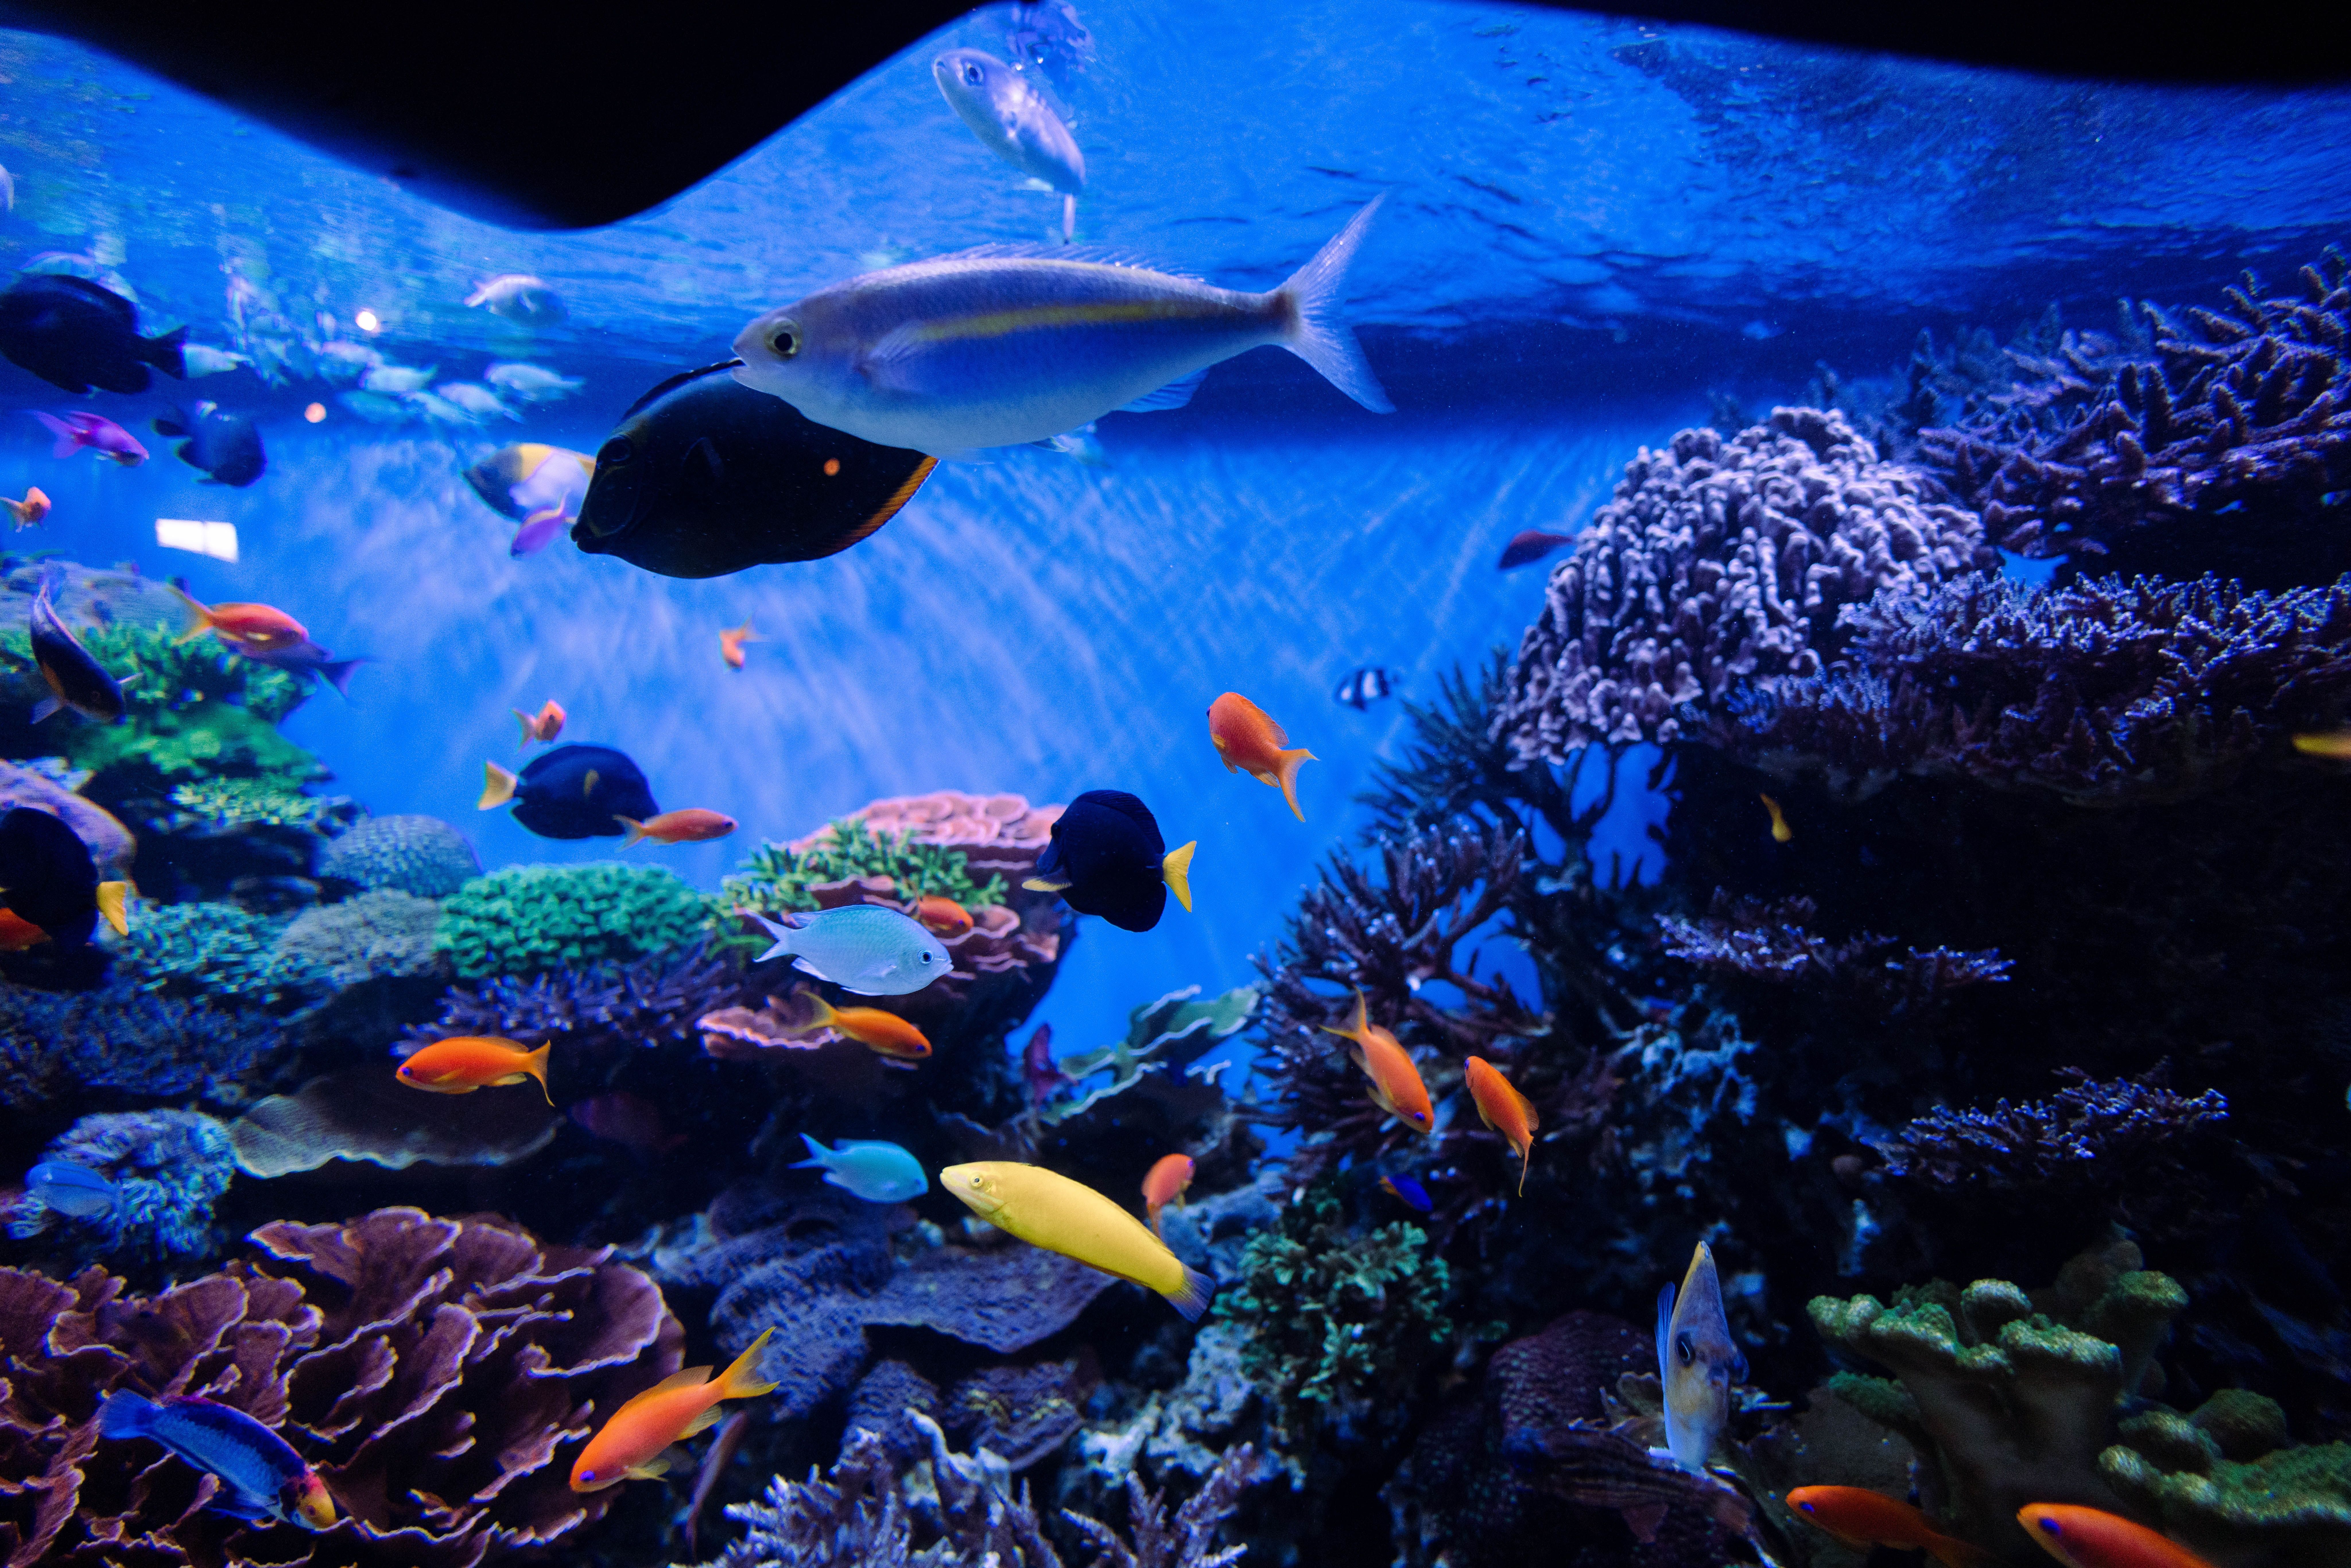  Aquarium Hintergrundbild 8192x5464. Kostenloses Foto zum Thema: aquarium, blau, bunt, fisch, koralle, korallen, meer, meereslebewesen, muster, nahansicht, ozean, salzwasser, seetang, tier, unterwasser, unterwasserhintergrund, unterwassertapete, wasser